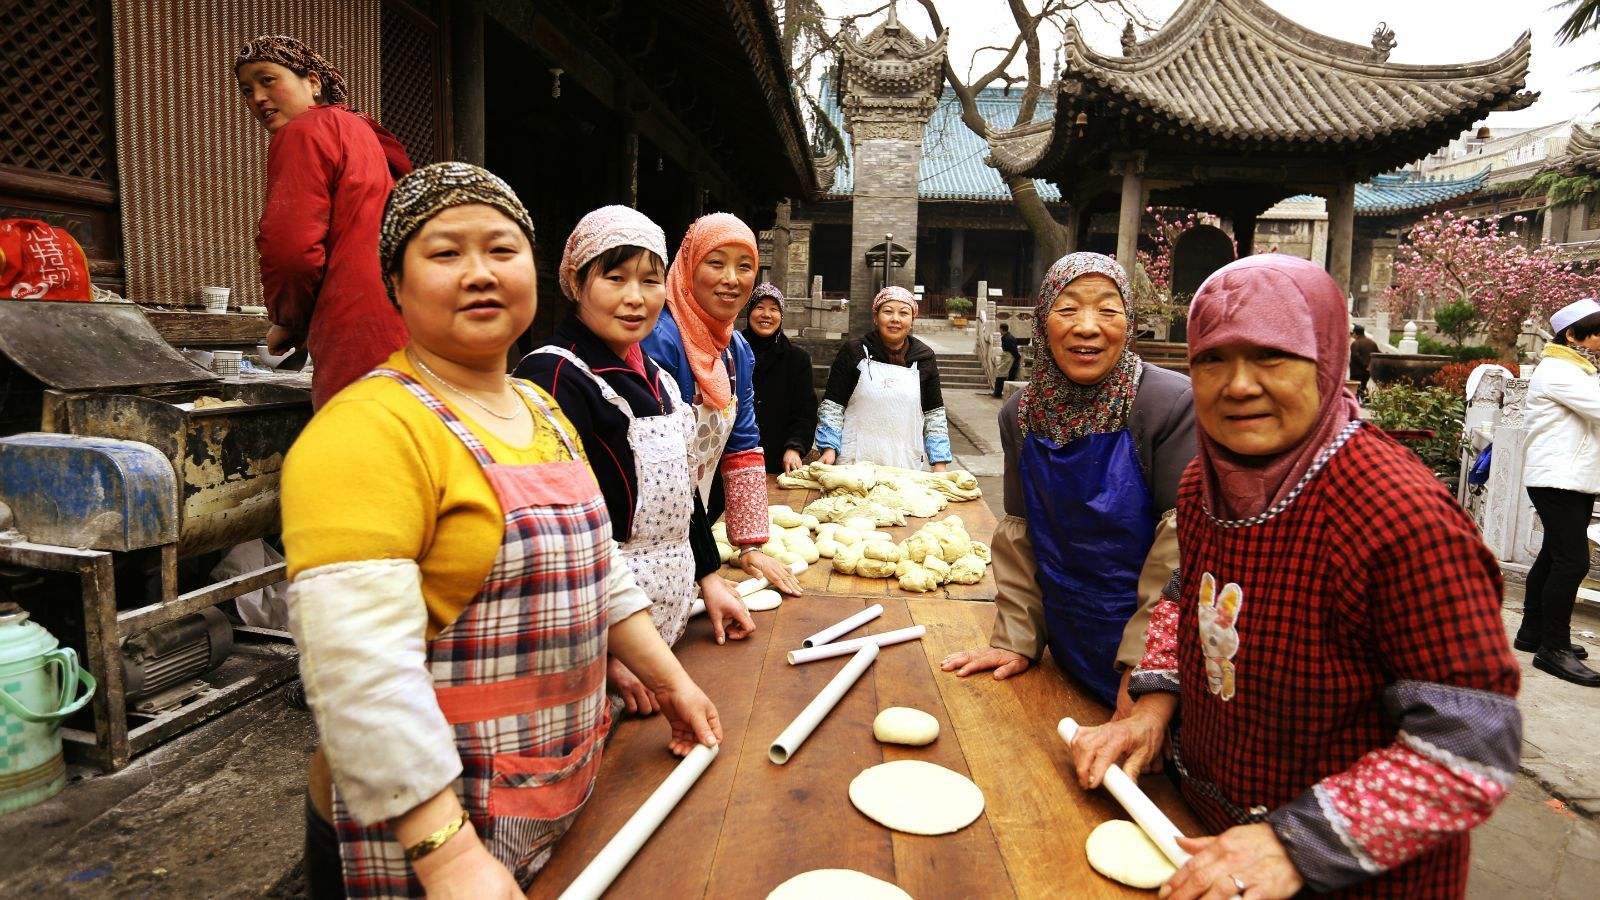 《九州花儿美》展现新时期回族儿女幸福生活-千龙网·中国首都网